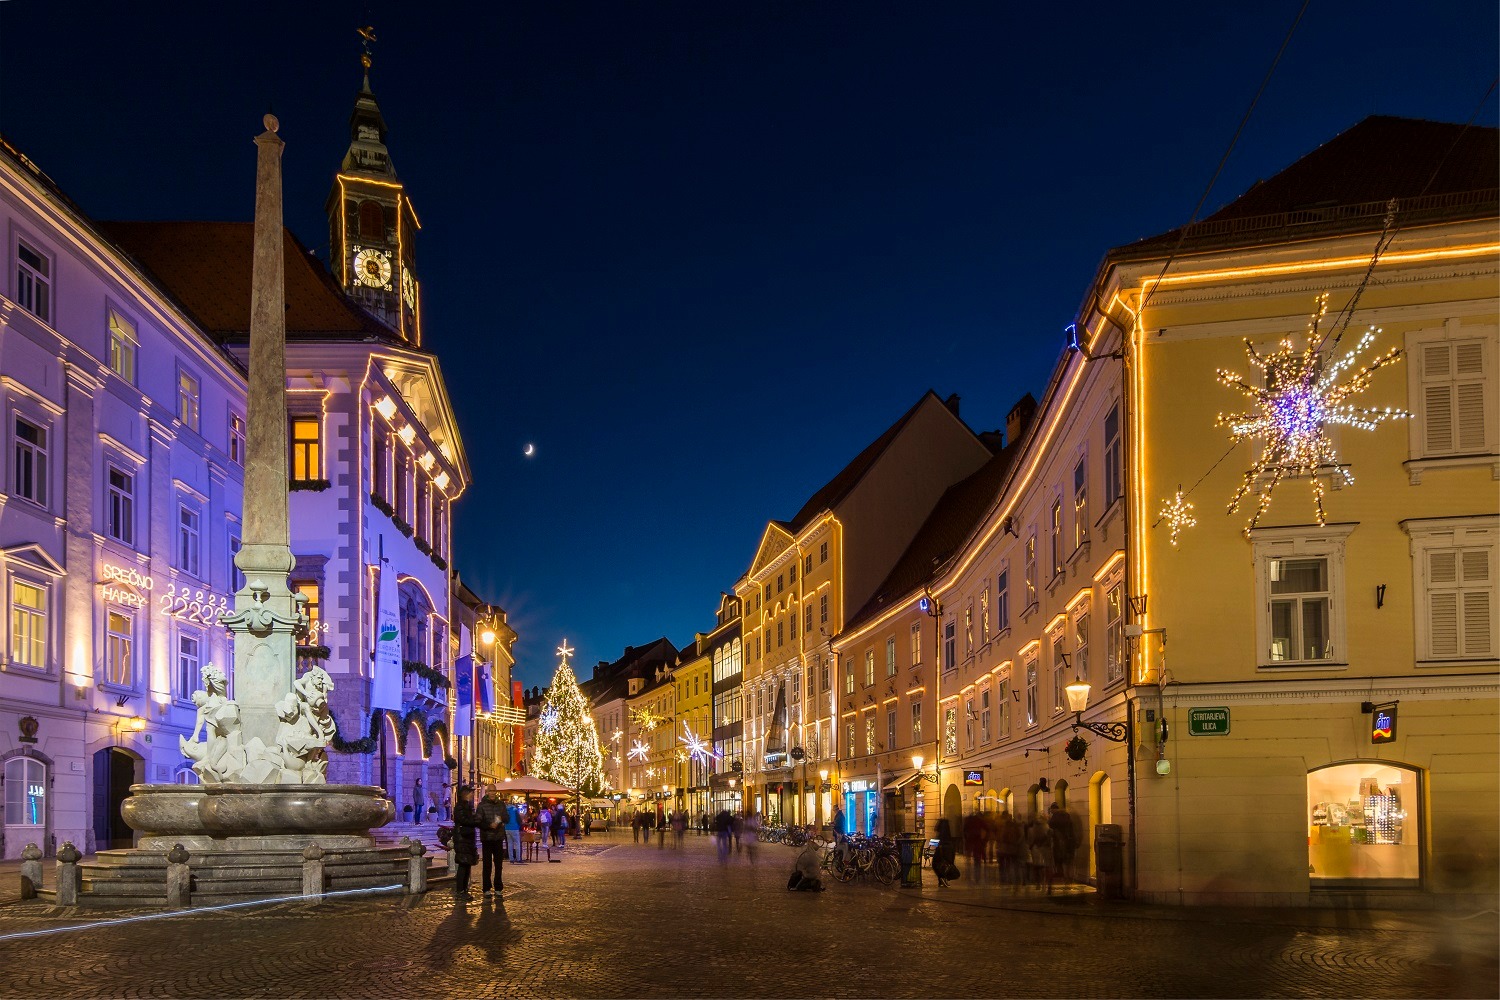 Turizem v sloveniji, okrašeno mestno jedro.